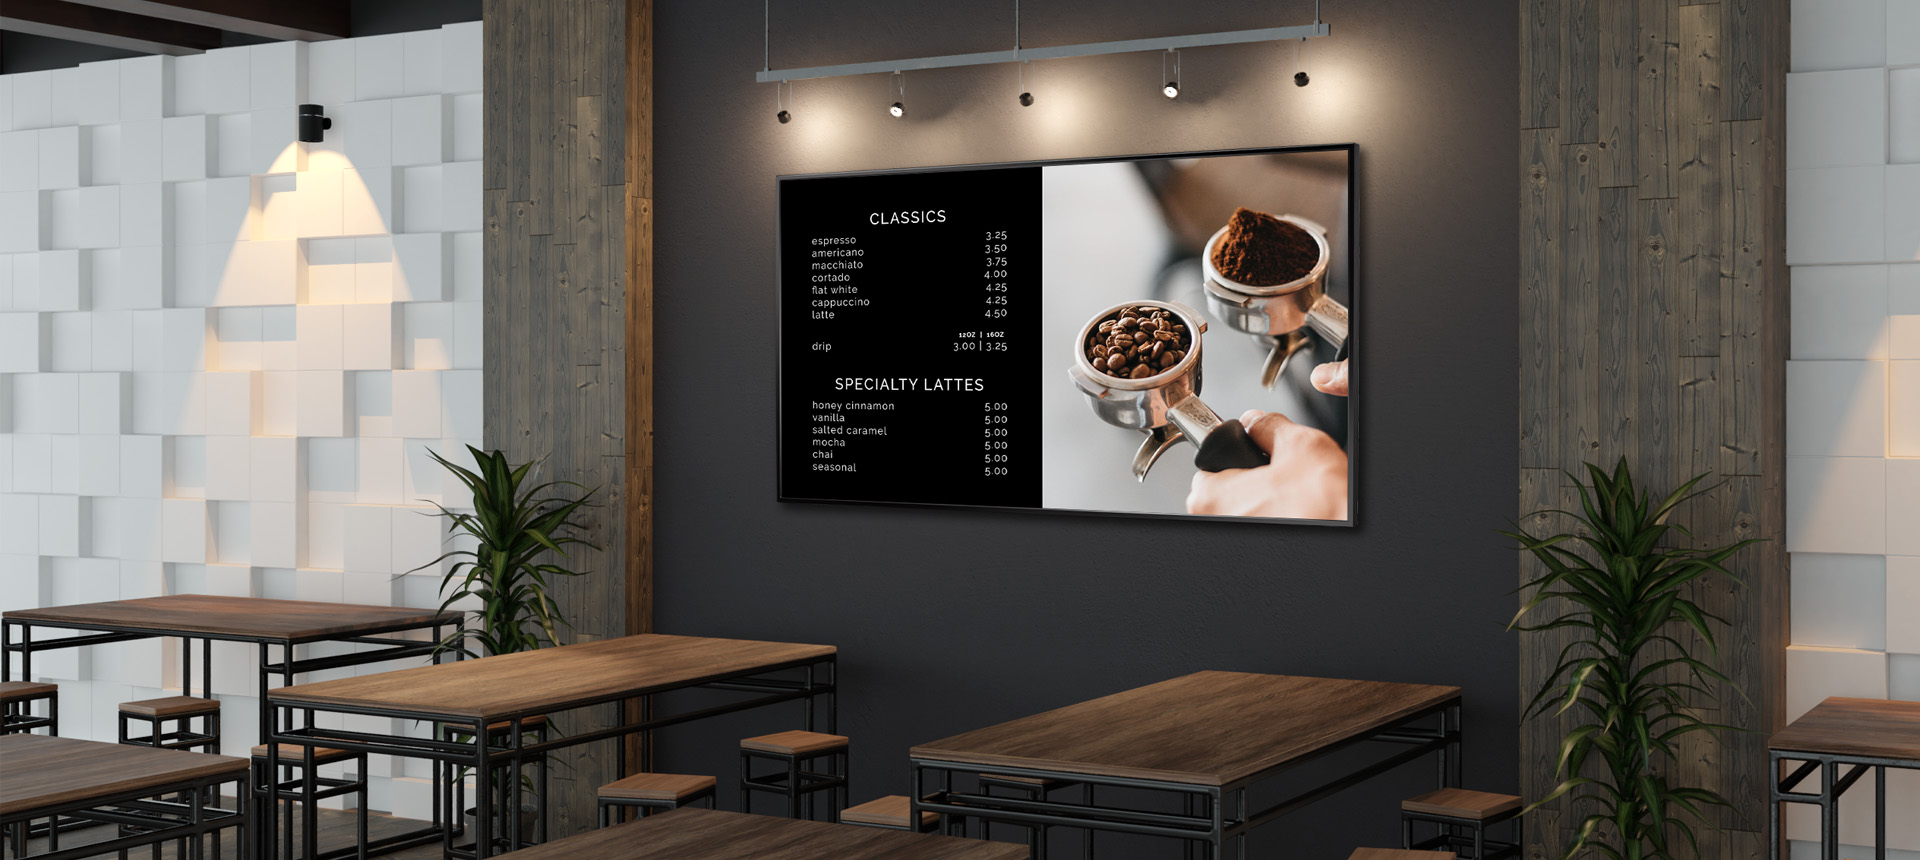 餐廳內安裝 AG Neovo 大型商用顯示器示意